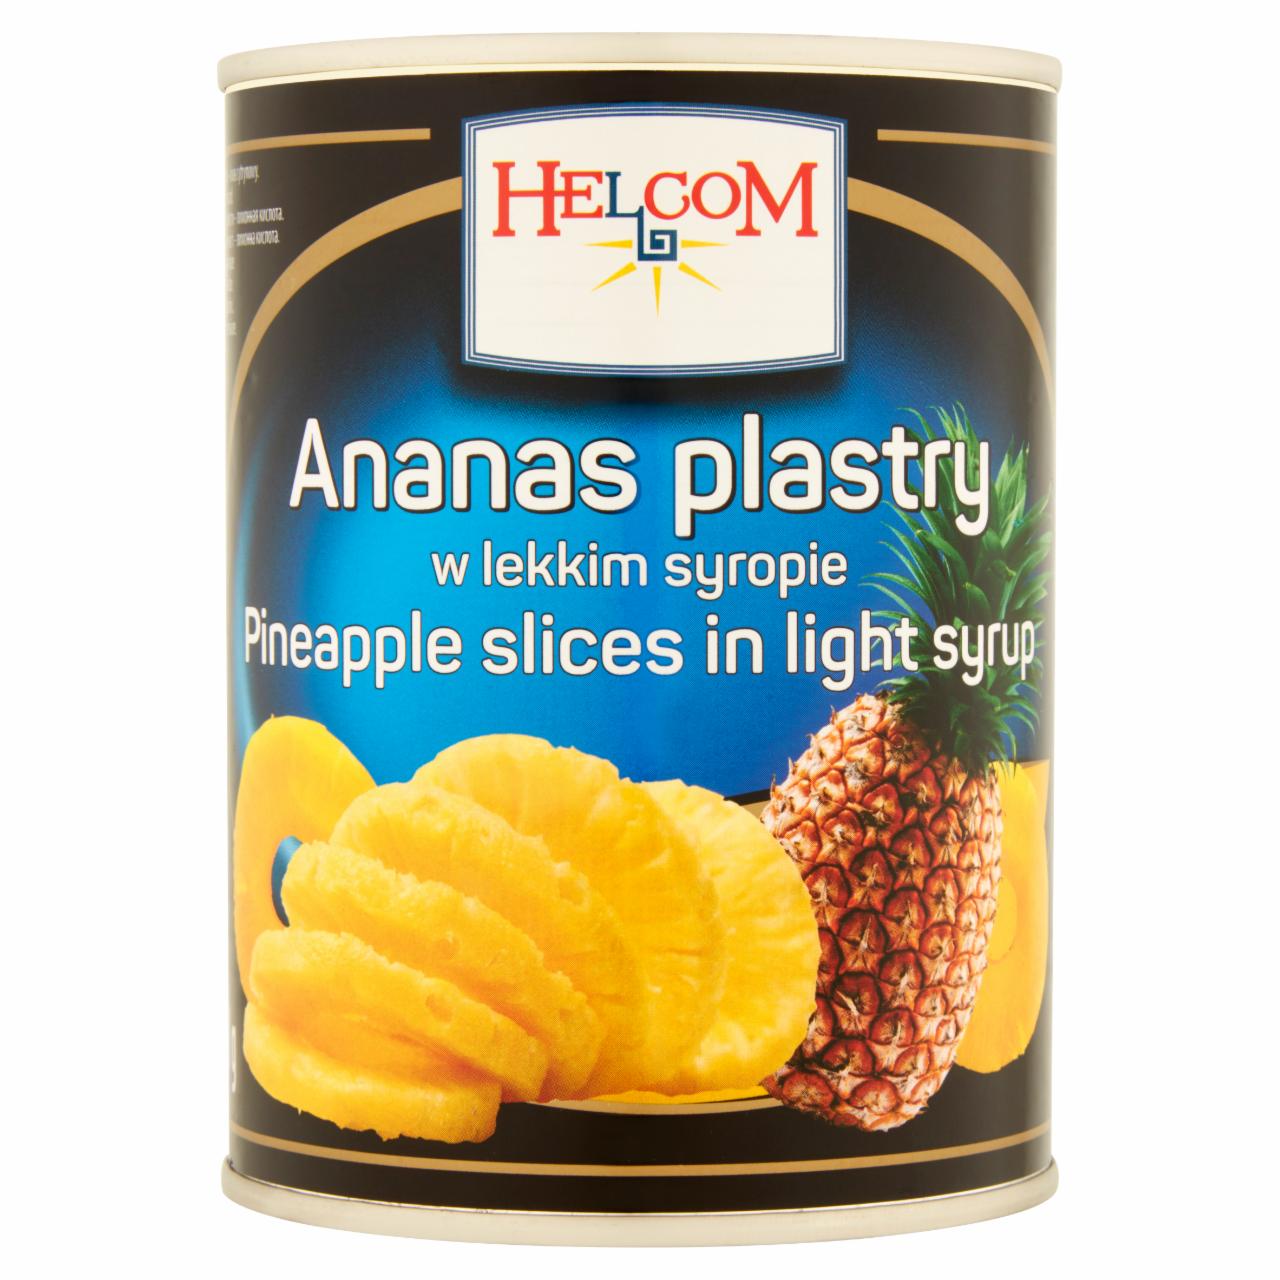 Zdjęcia - Helcom Ananas plastry w lekkim syropie 565 g